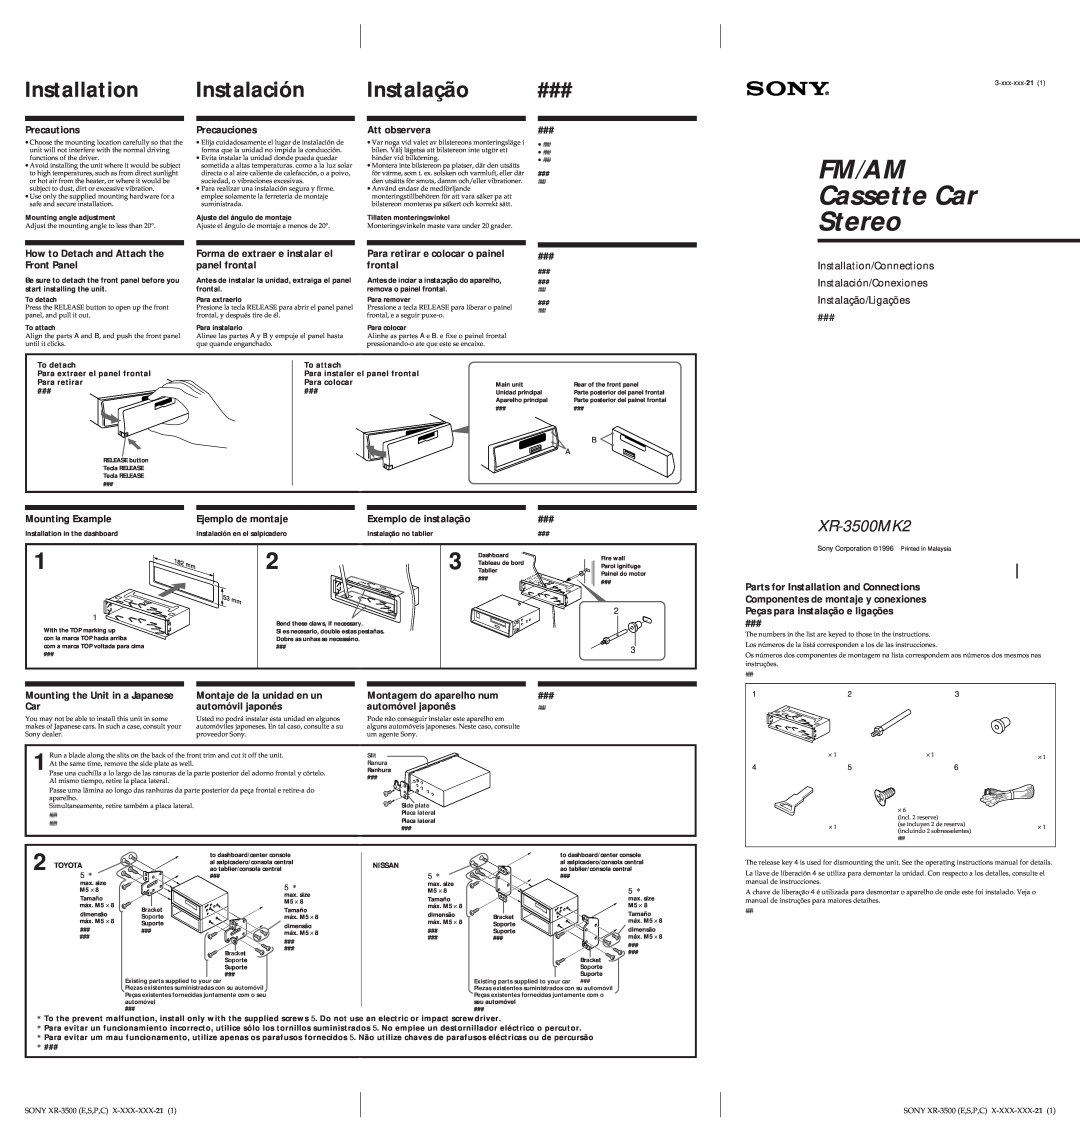 Sony manual En Es P C, Sony XR-3500MK2E,S,P,C, 3-858-231-111, by Sony Corporation, FM/AM Cassette Car Stereo 